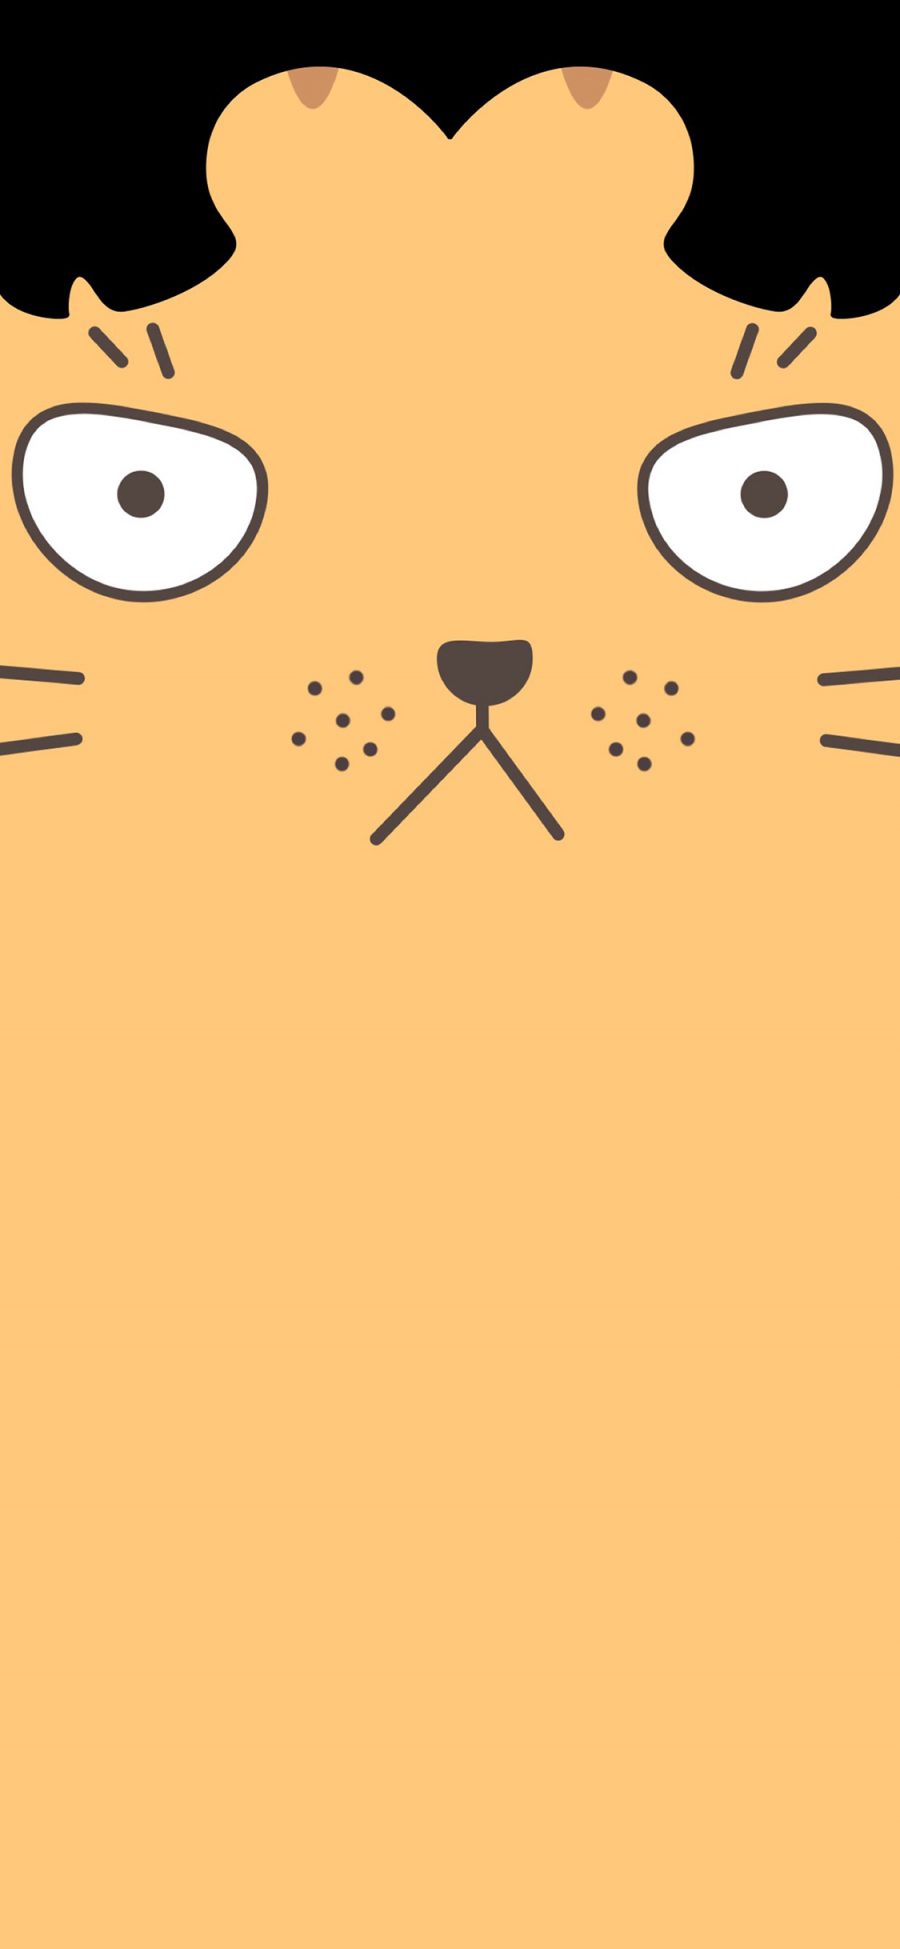 [2436×1125]中分 刘海 卡通 可爱 猫咪 喵星人 苹果手机动漫壁纸图片